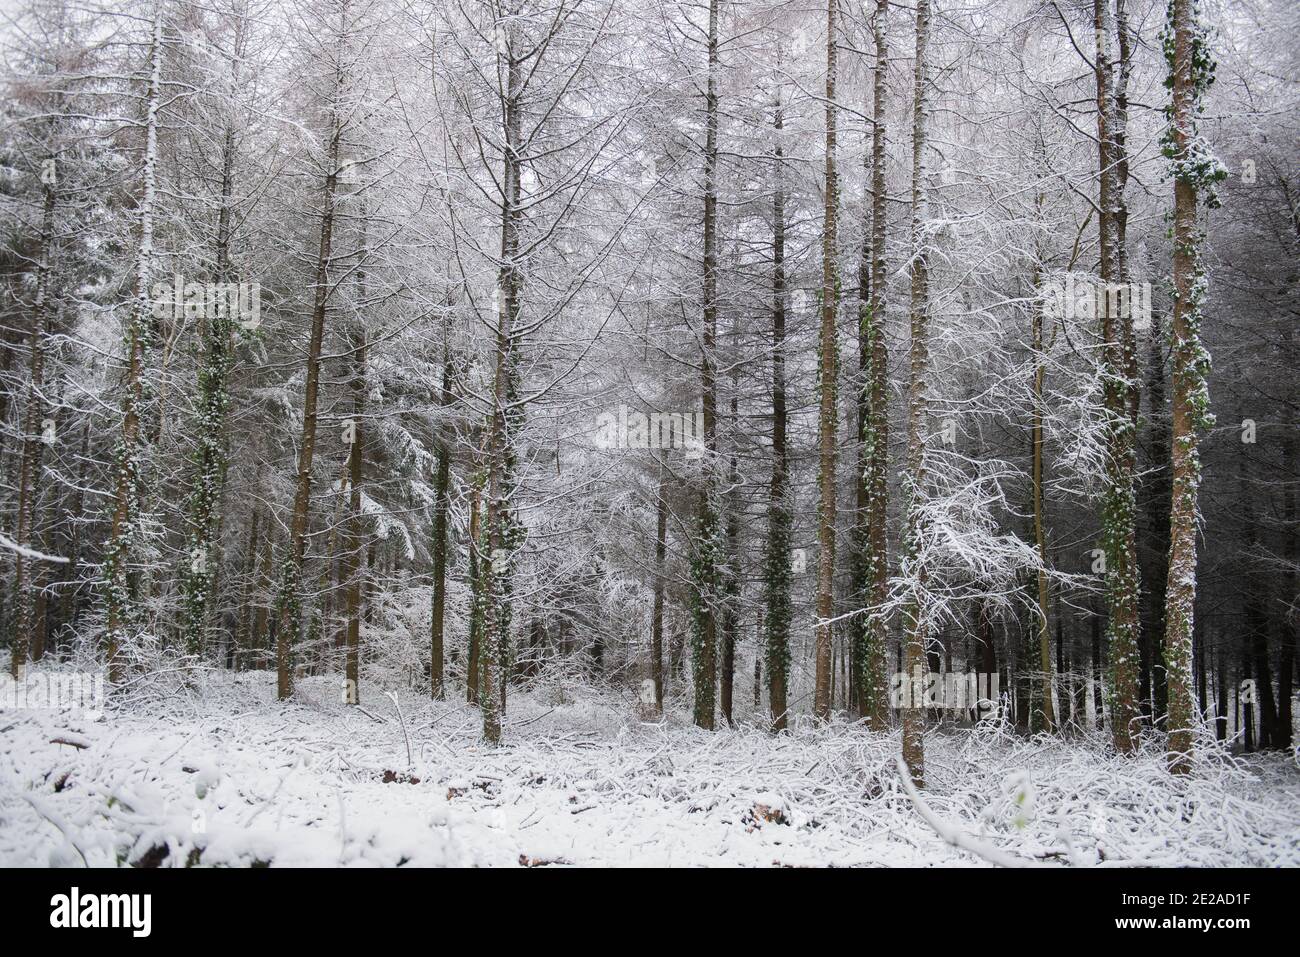 Laques européennes à feuilles caduques (Larix decidua) couvertes de neige dans une forêt du Devon rural, Angleterre, Royaume-Uni Banque D'Images